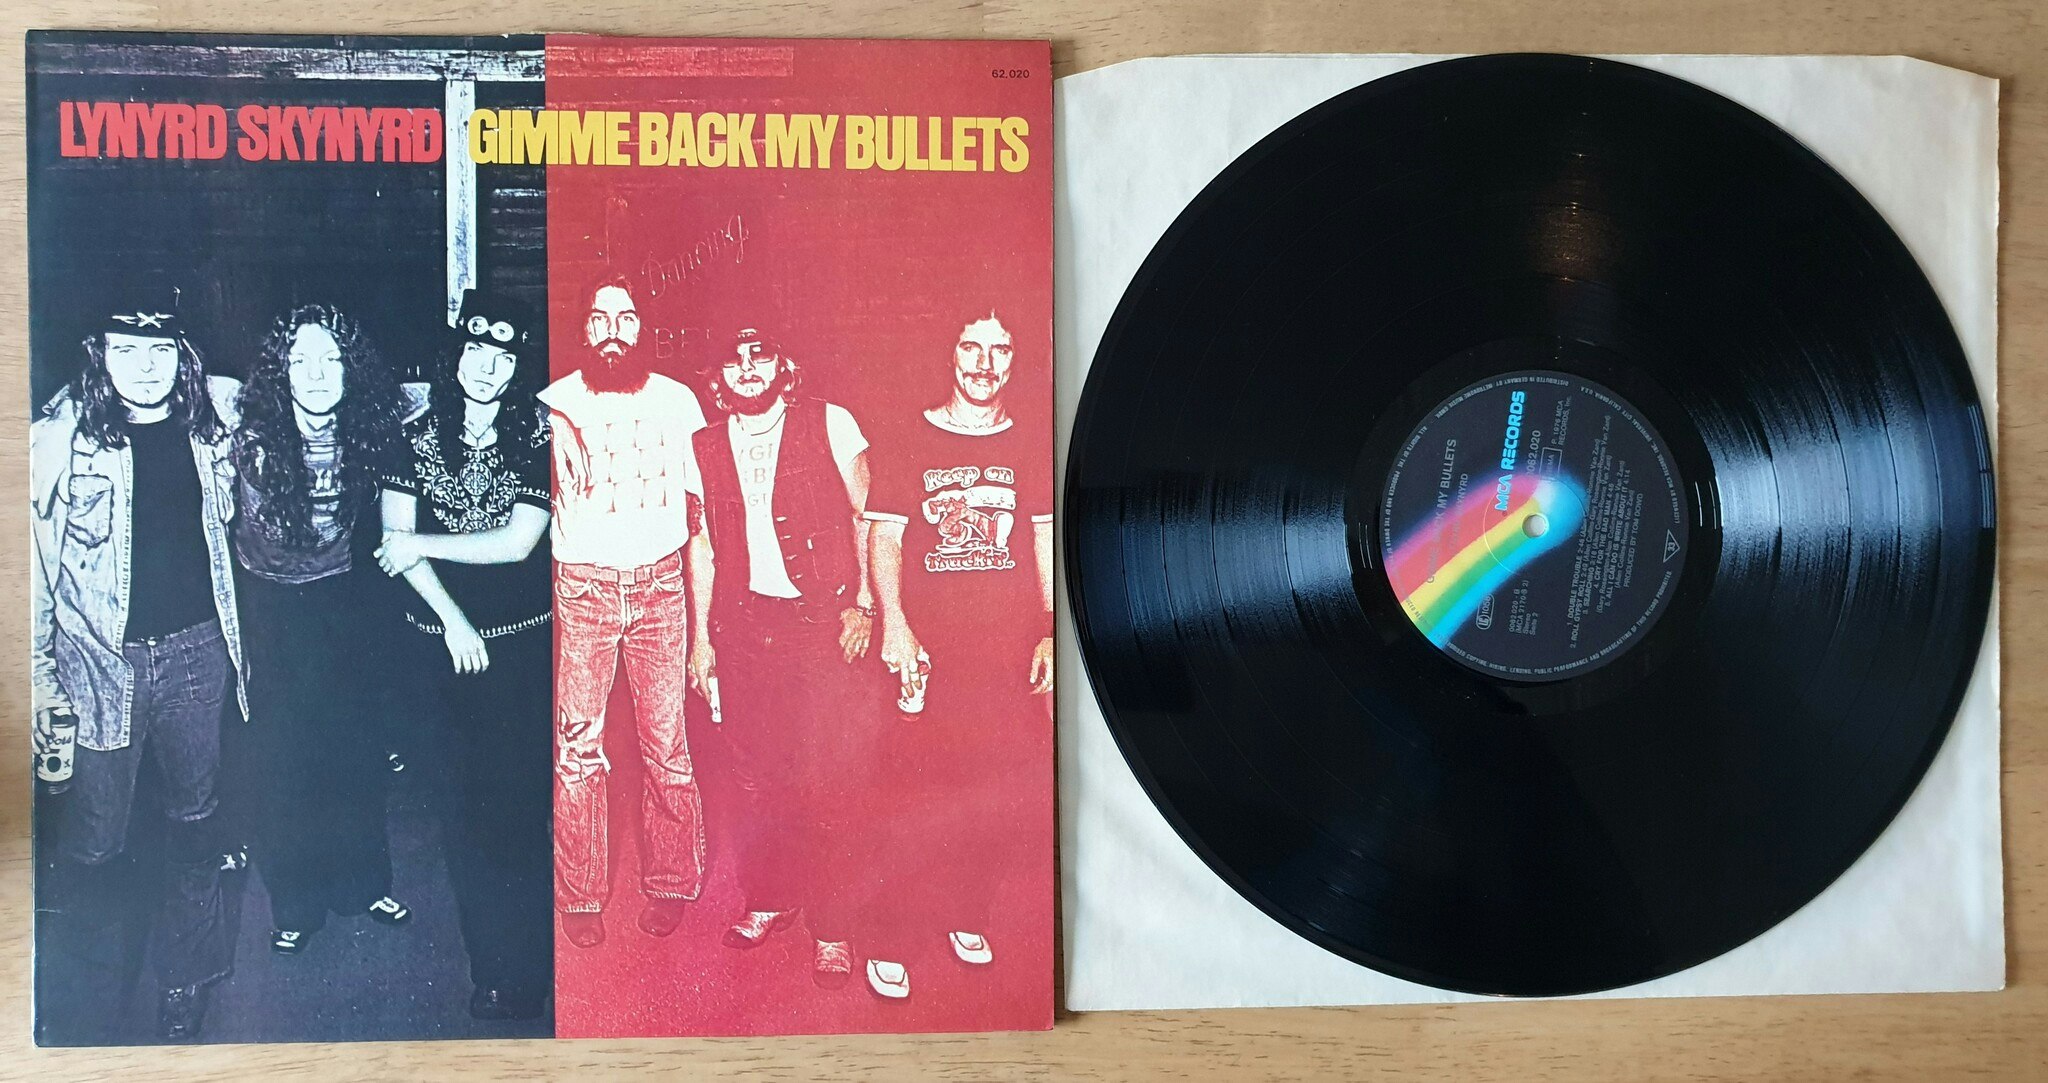 Lynyrd Skynyrd, Gimme back my bullets. Vinyl LP